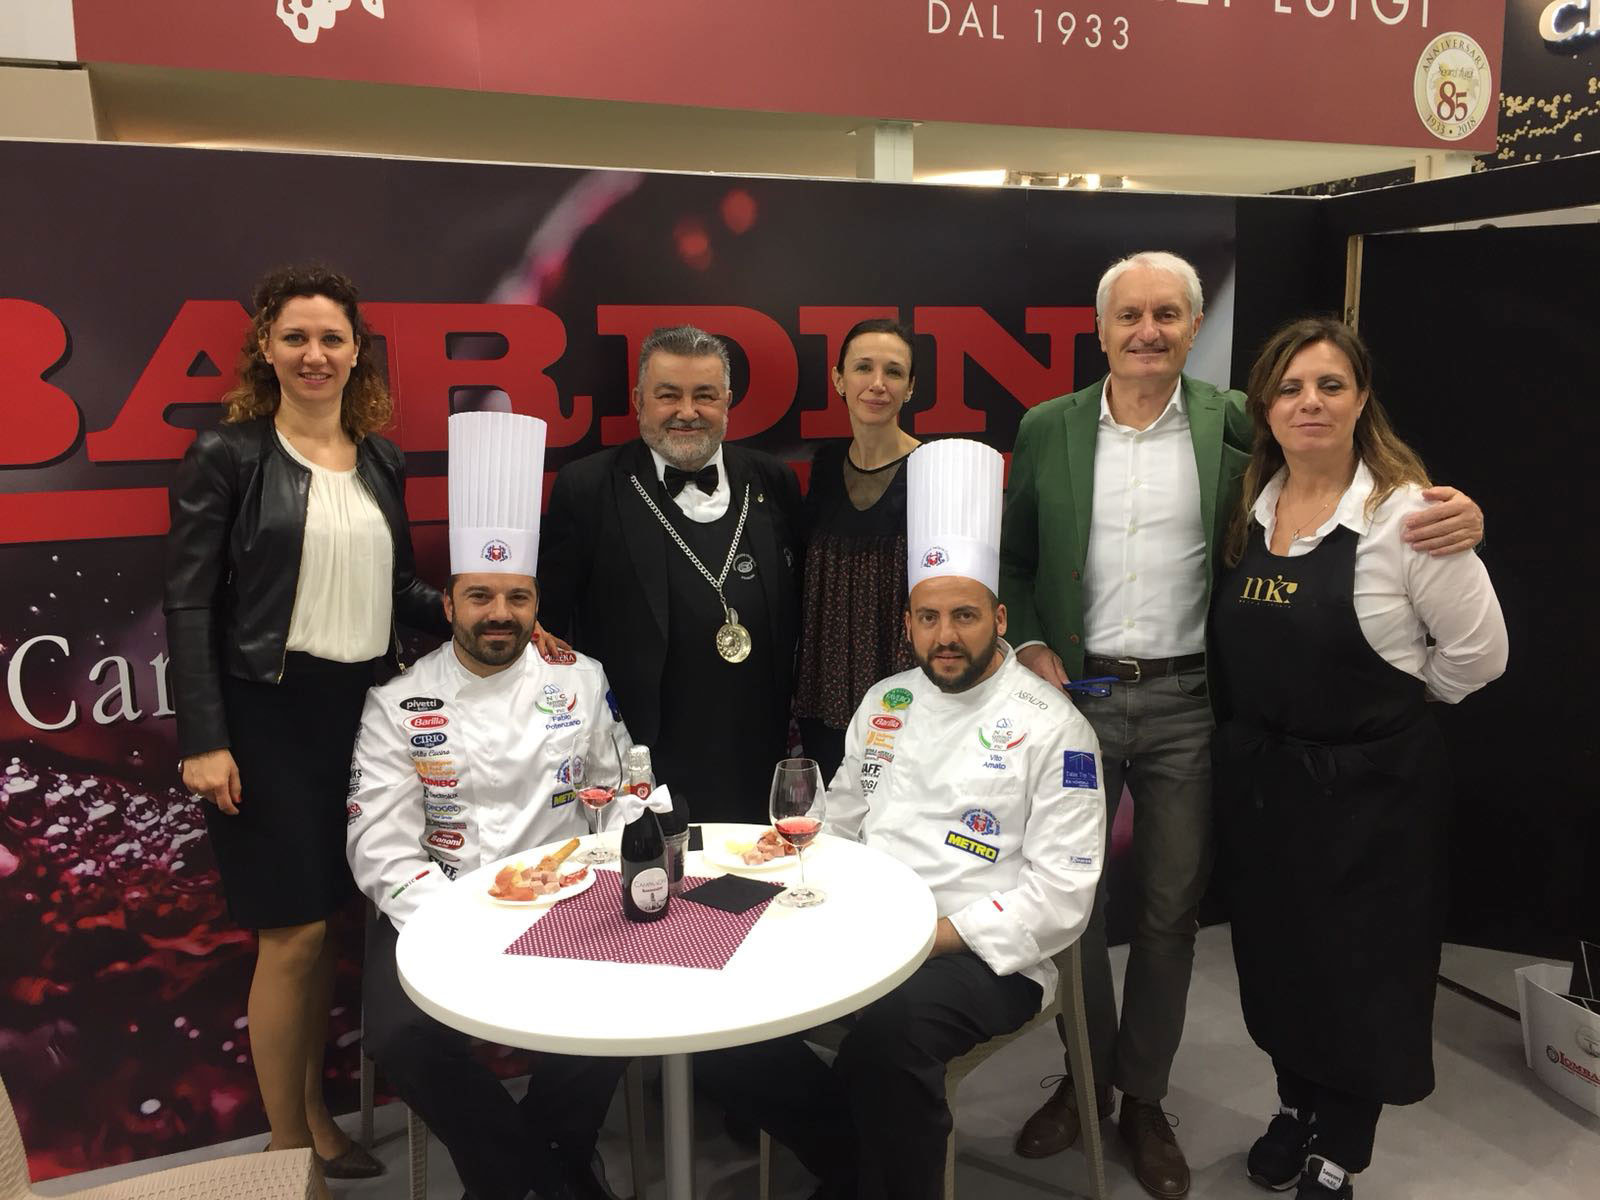 Vinitaly 2018 - Lombardini Vini